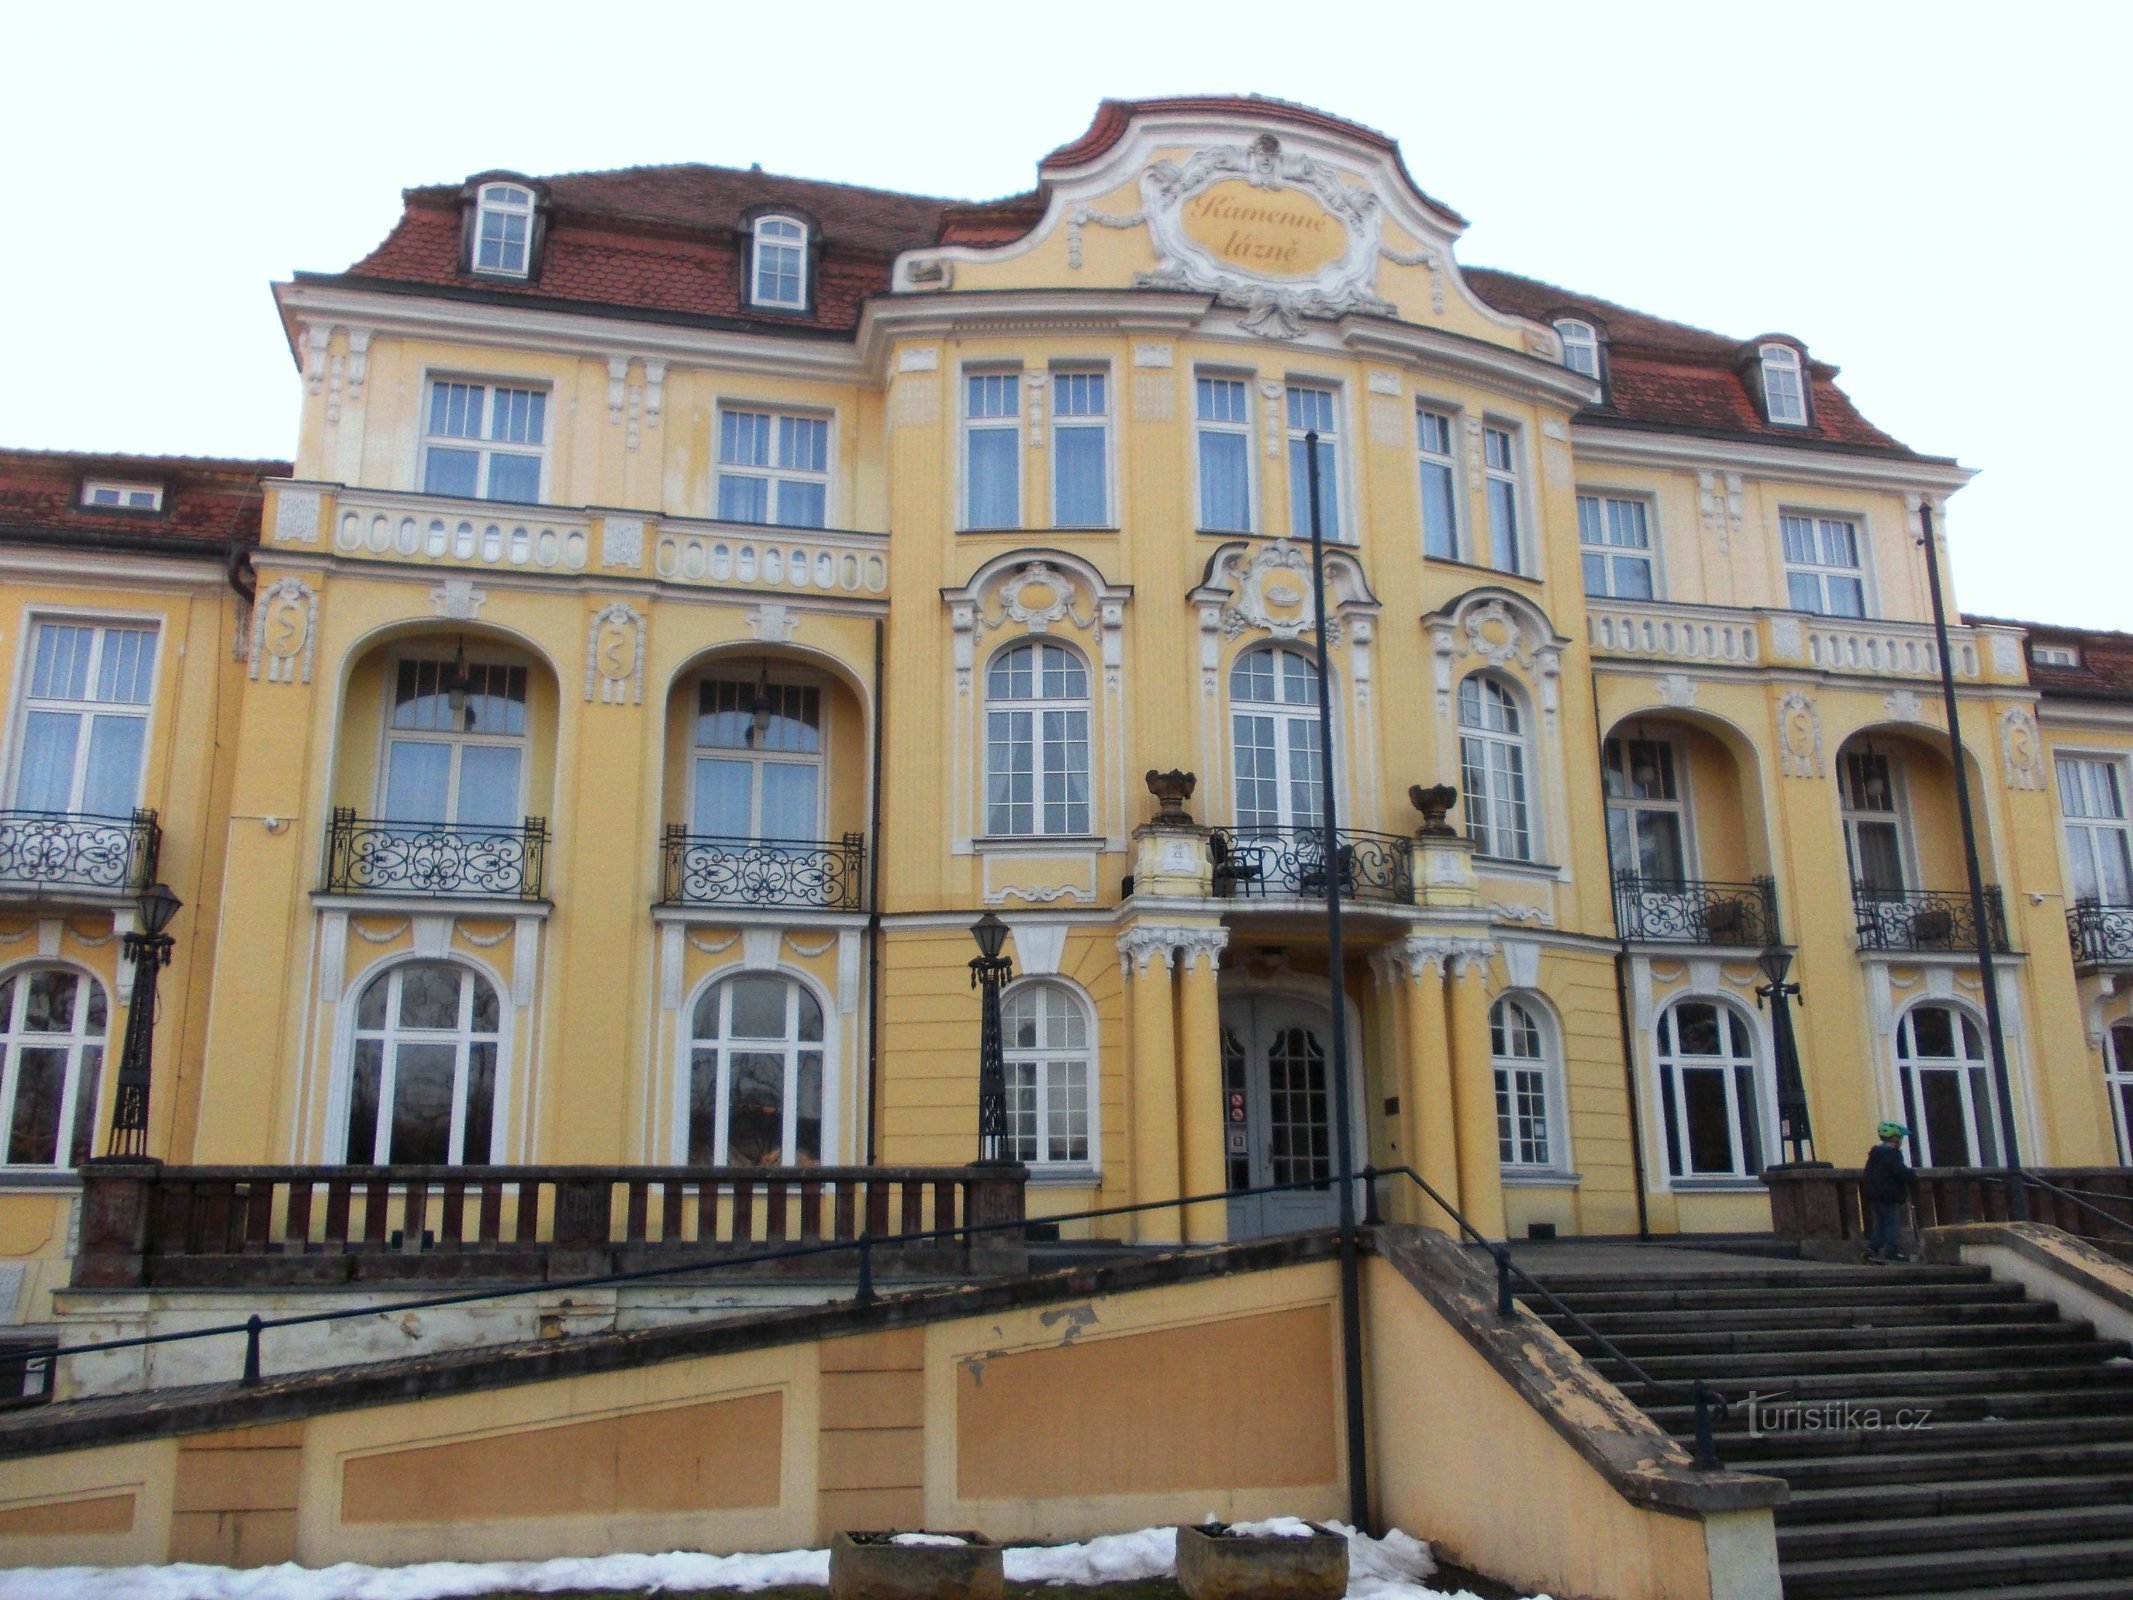 tòa nhà Kamenná lažná